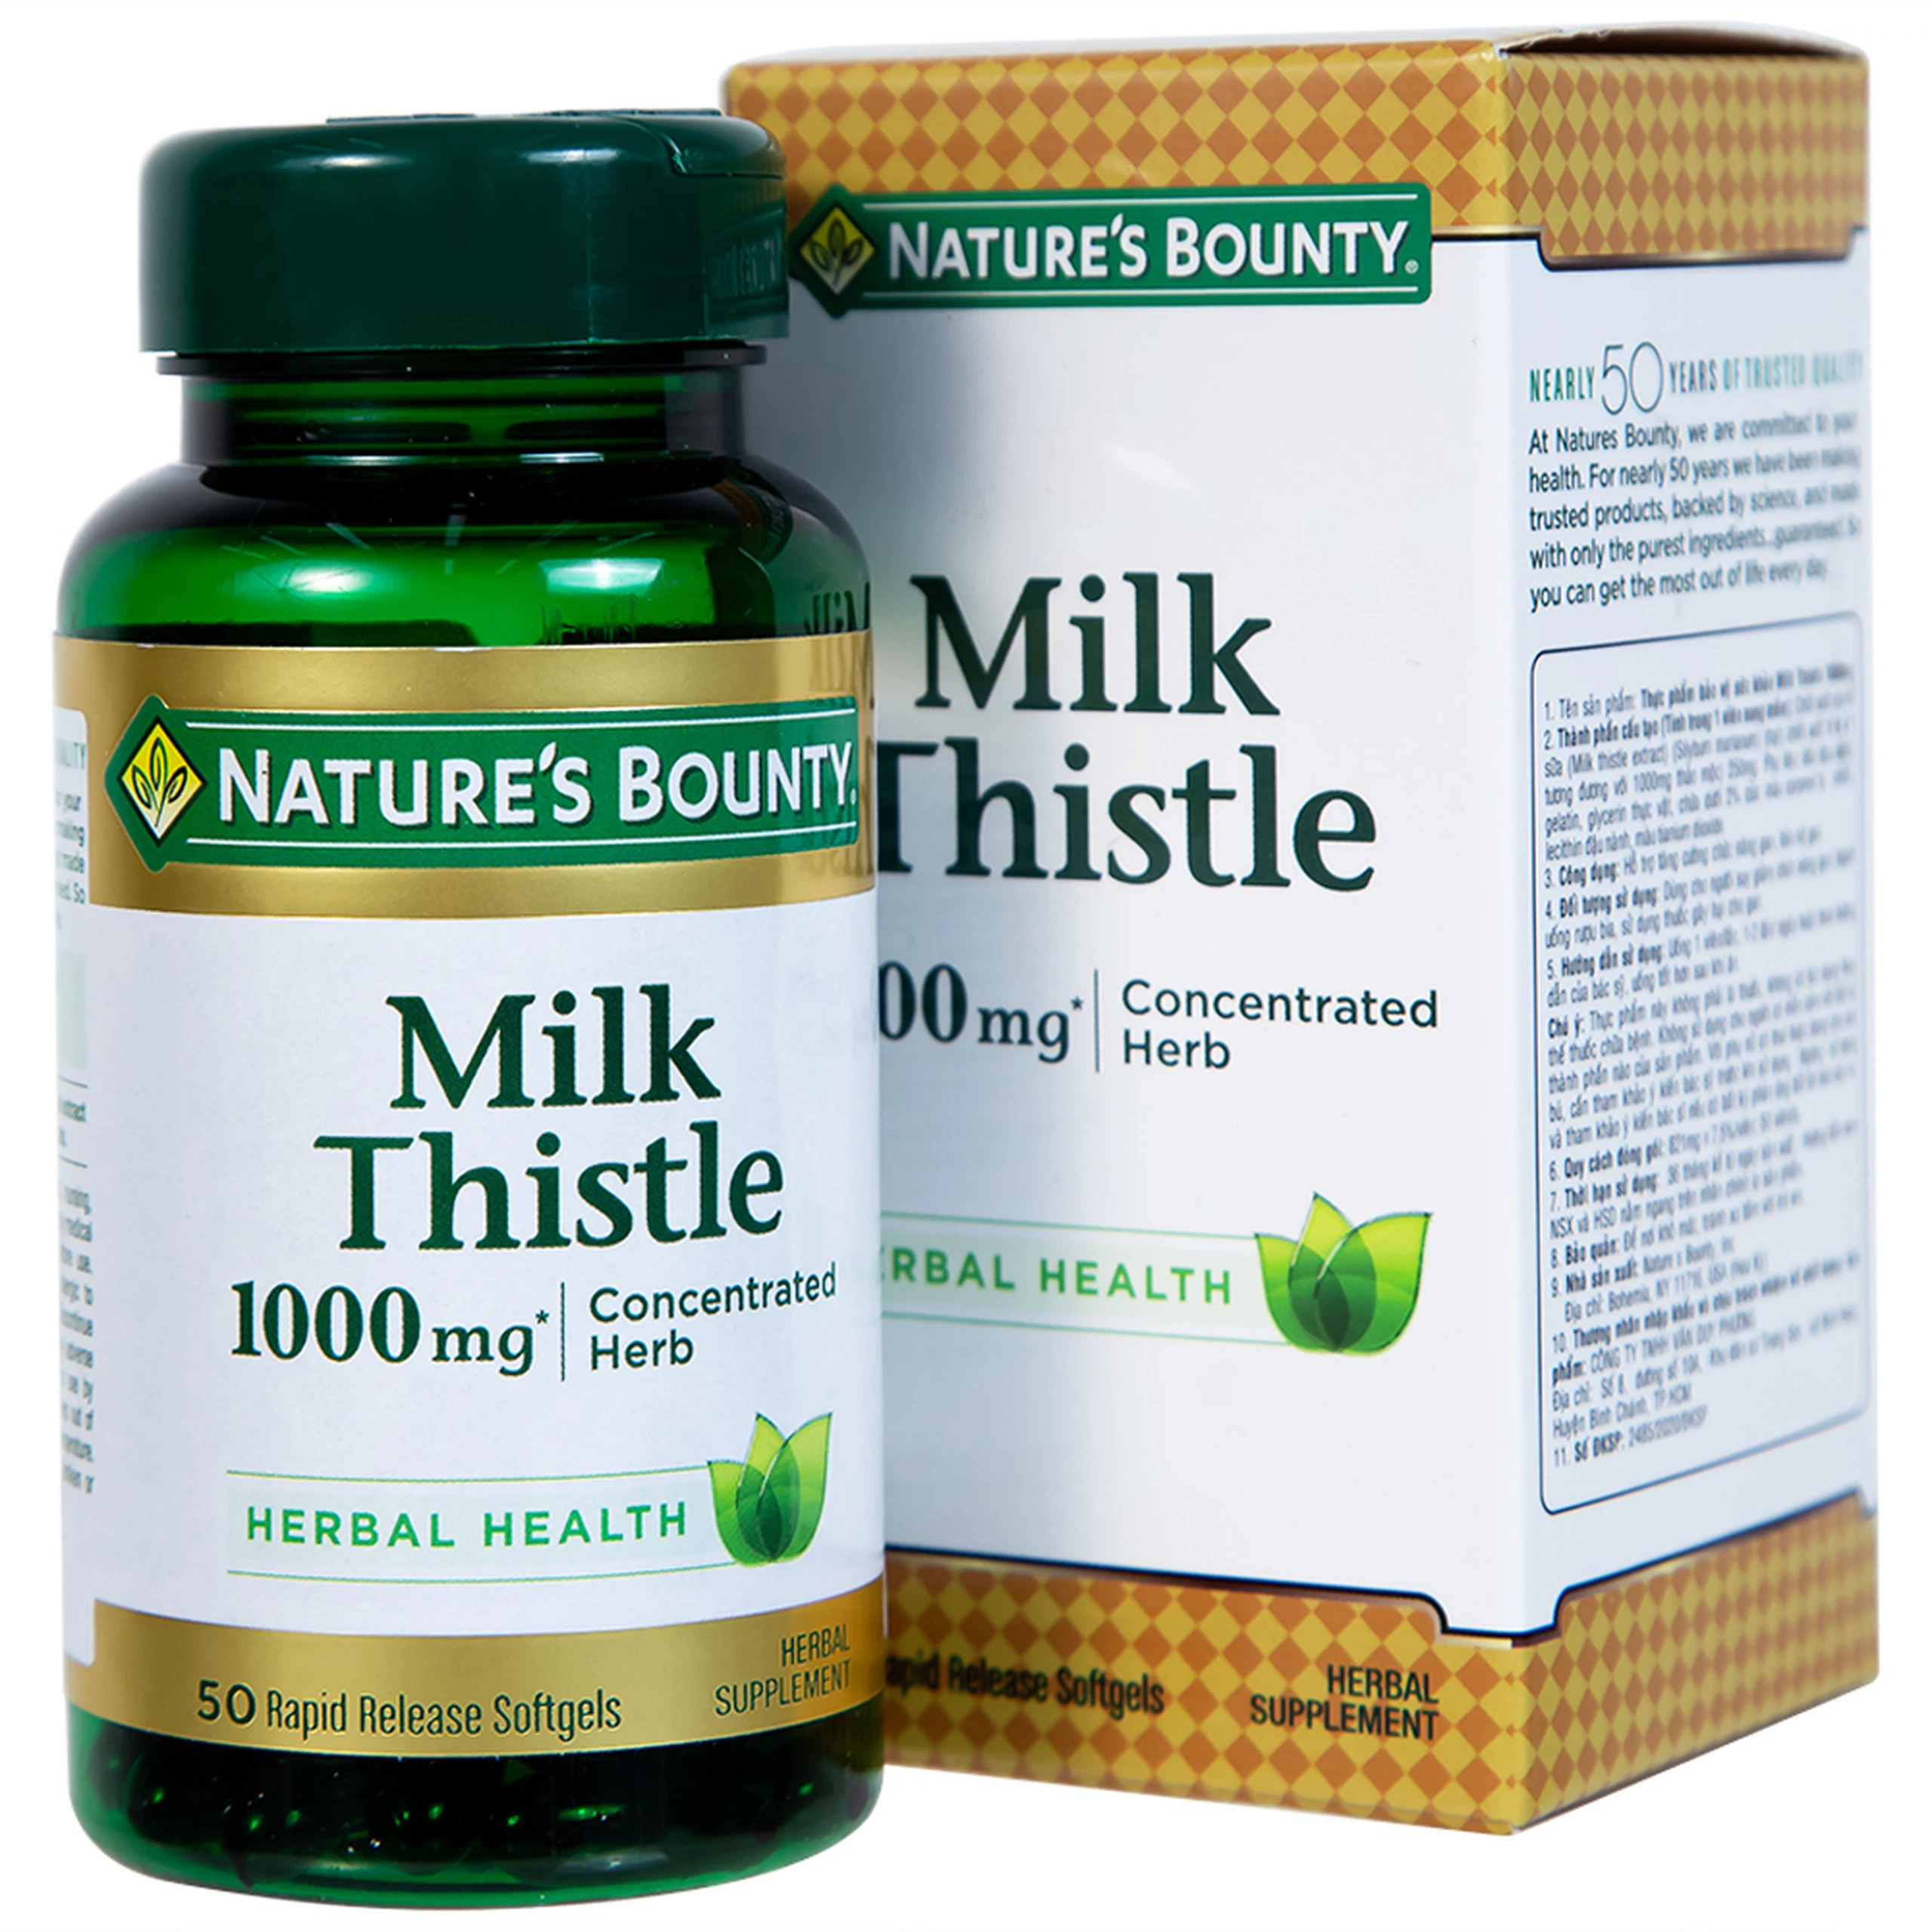 Viên uống Milk Thistle Nature's Bounty hỗ trợ tăng cường chức năng gan, bảo vệ gan (50 viên)